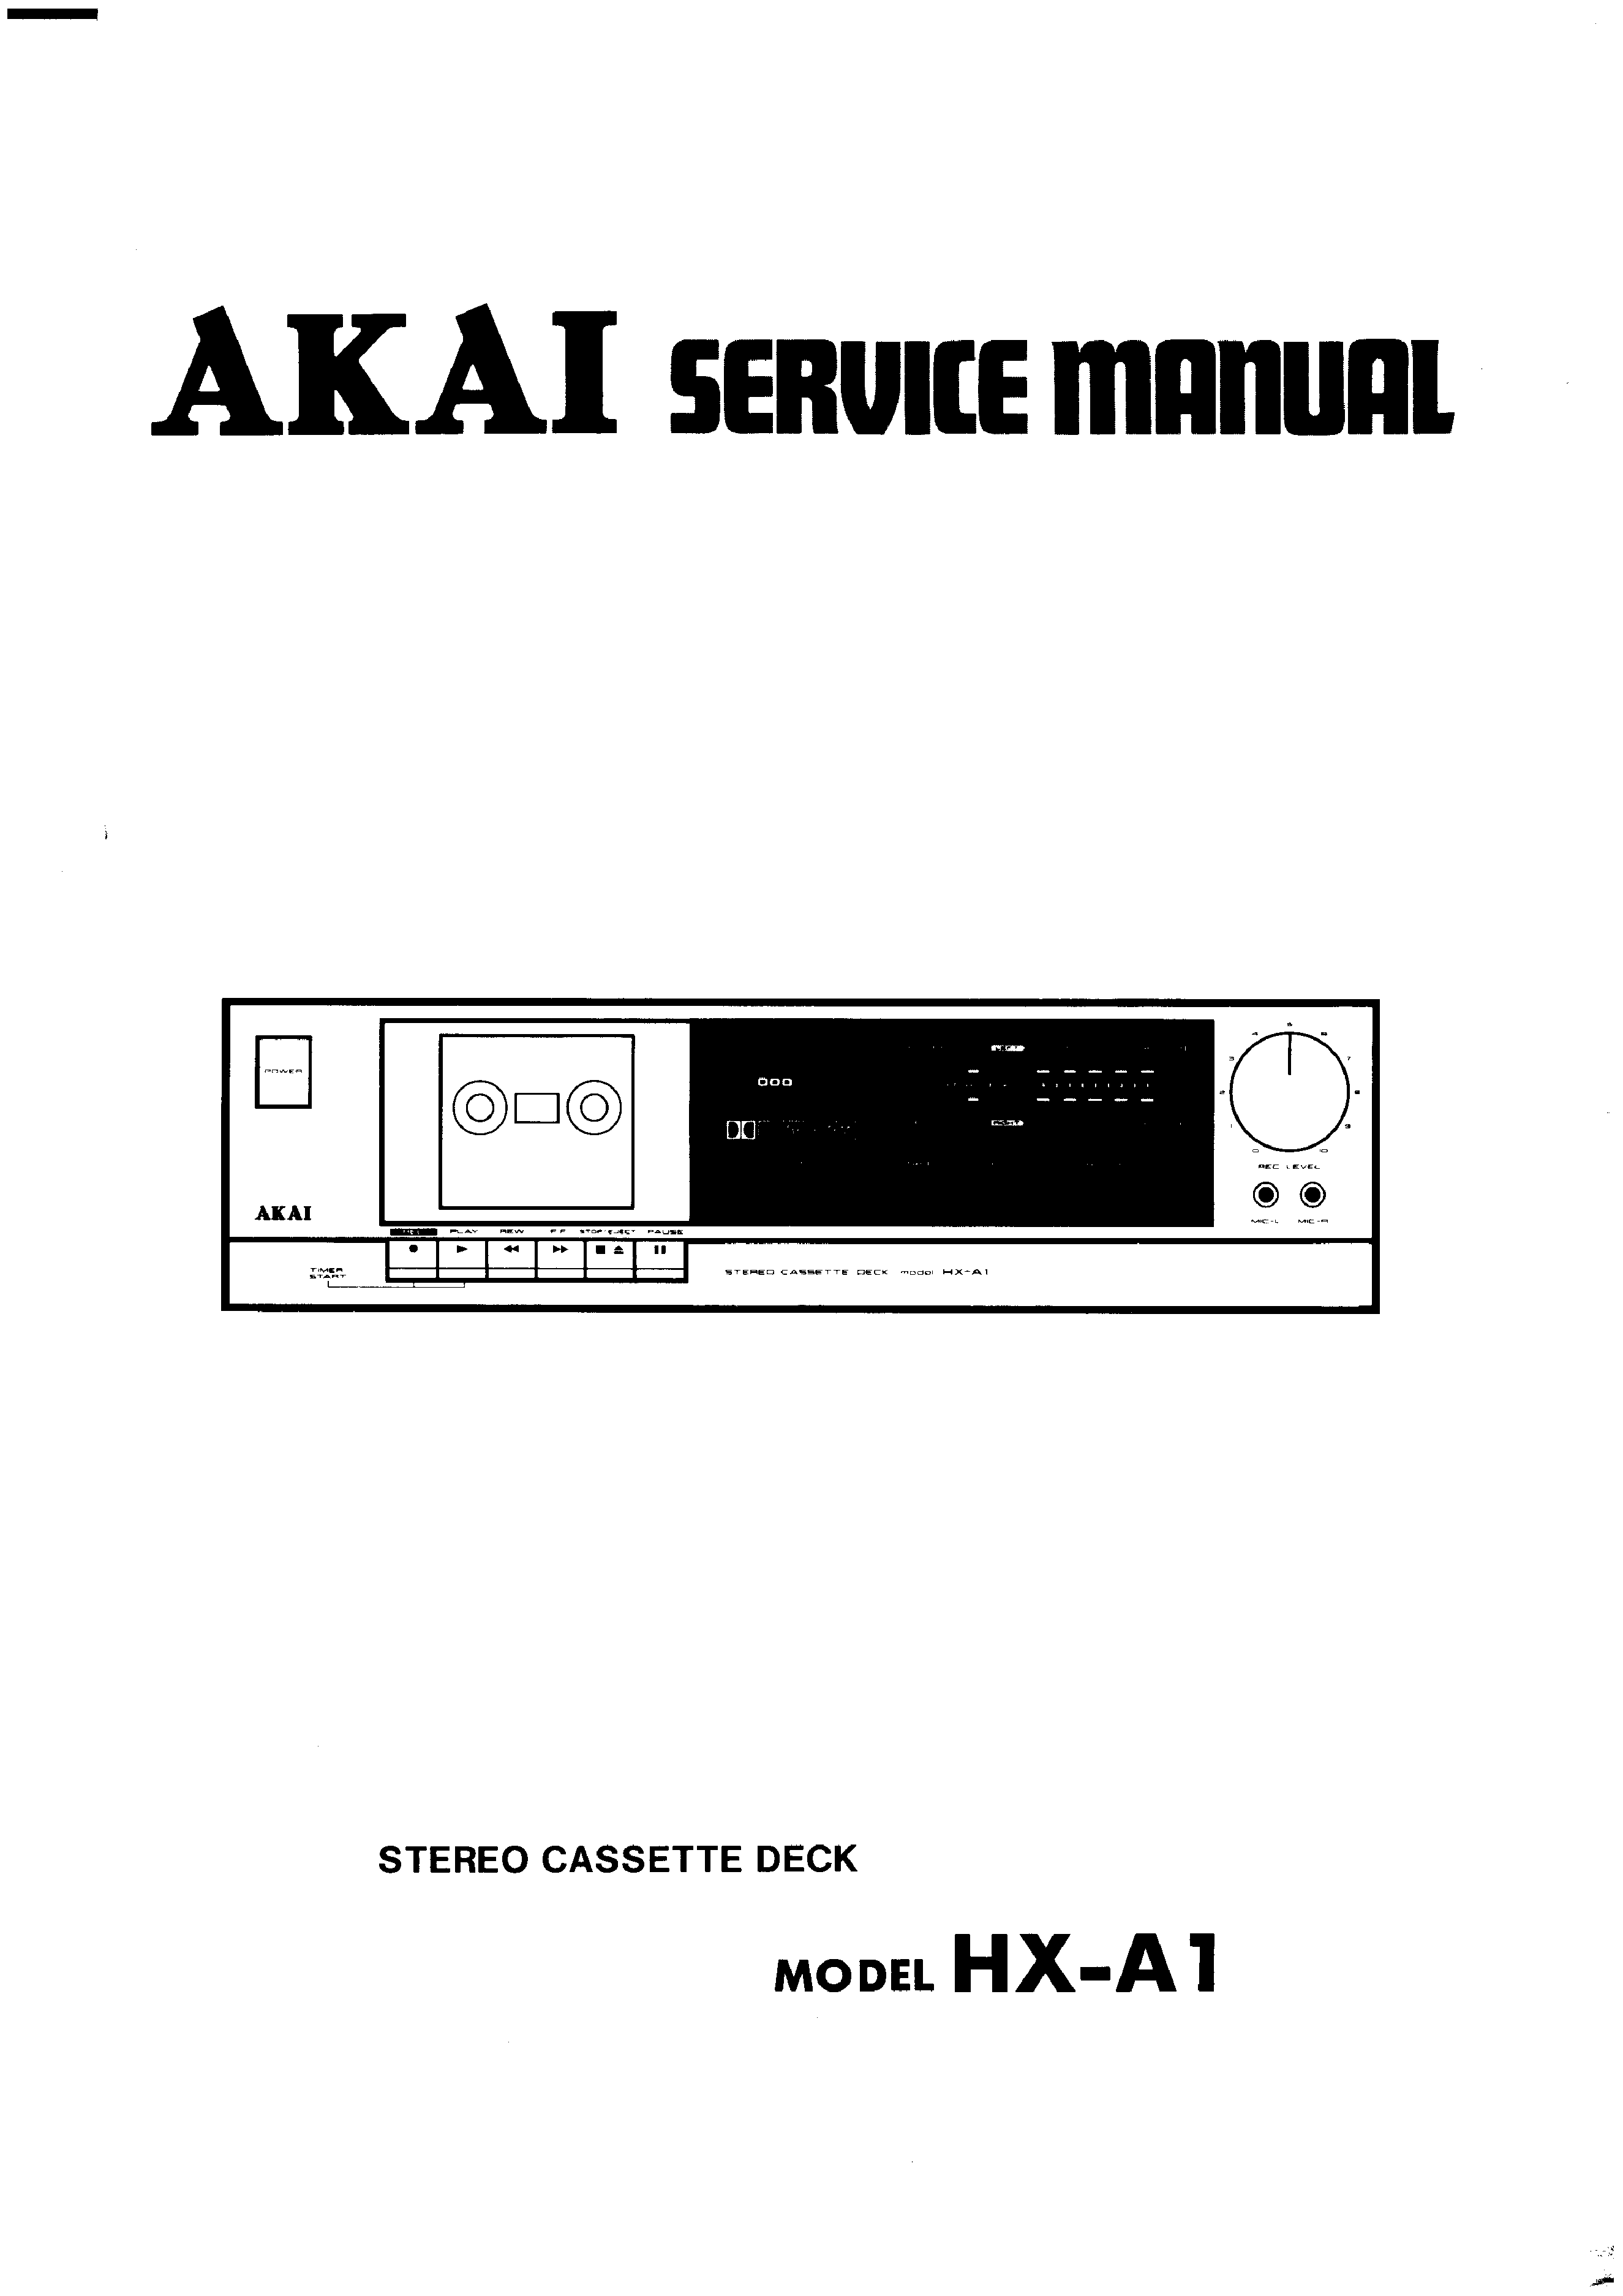 ORIGINALI Service Manual Schema Elettrico AKAI hx-a1 